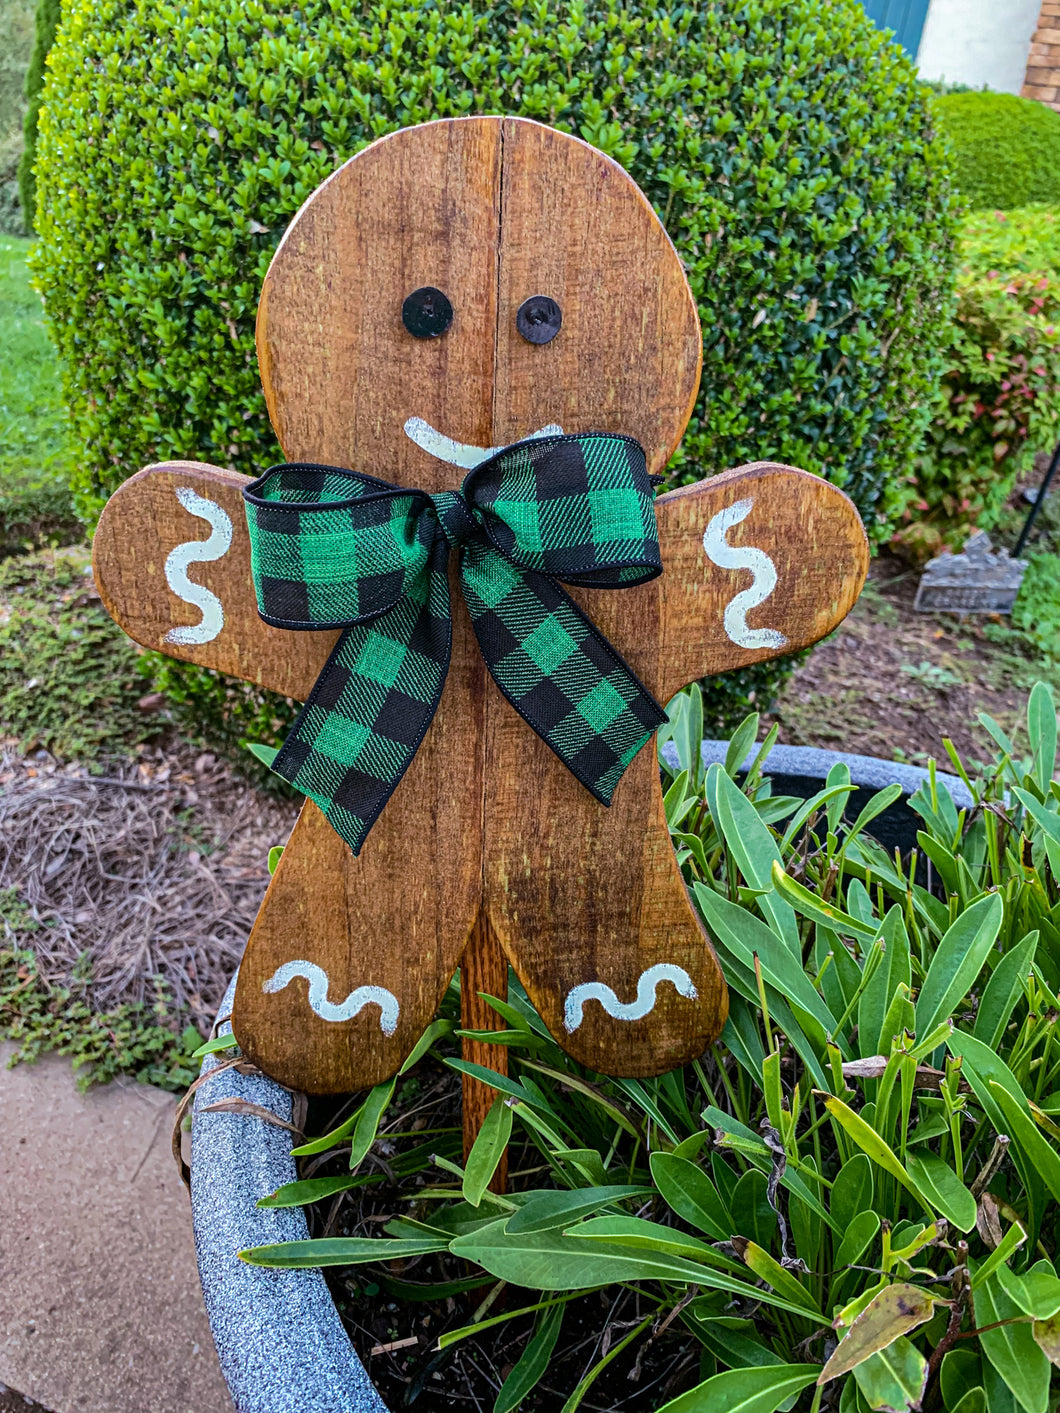 Outdoor Gingerbread Man